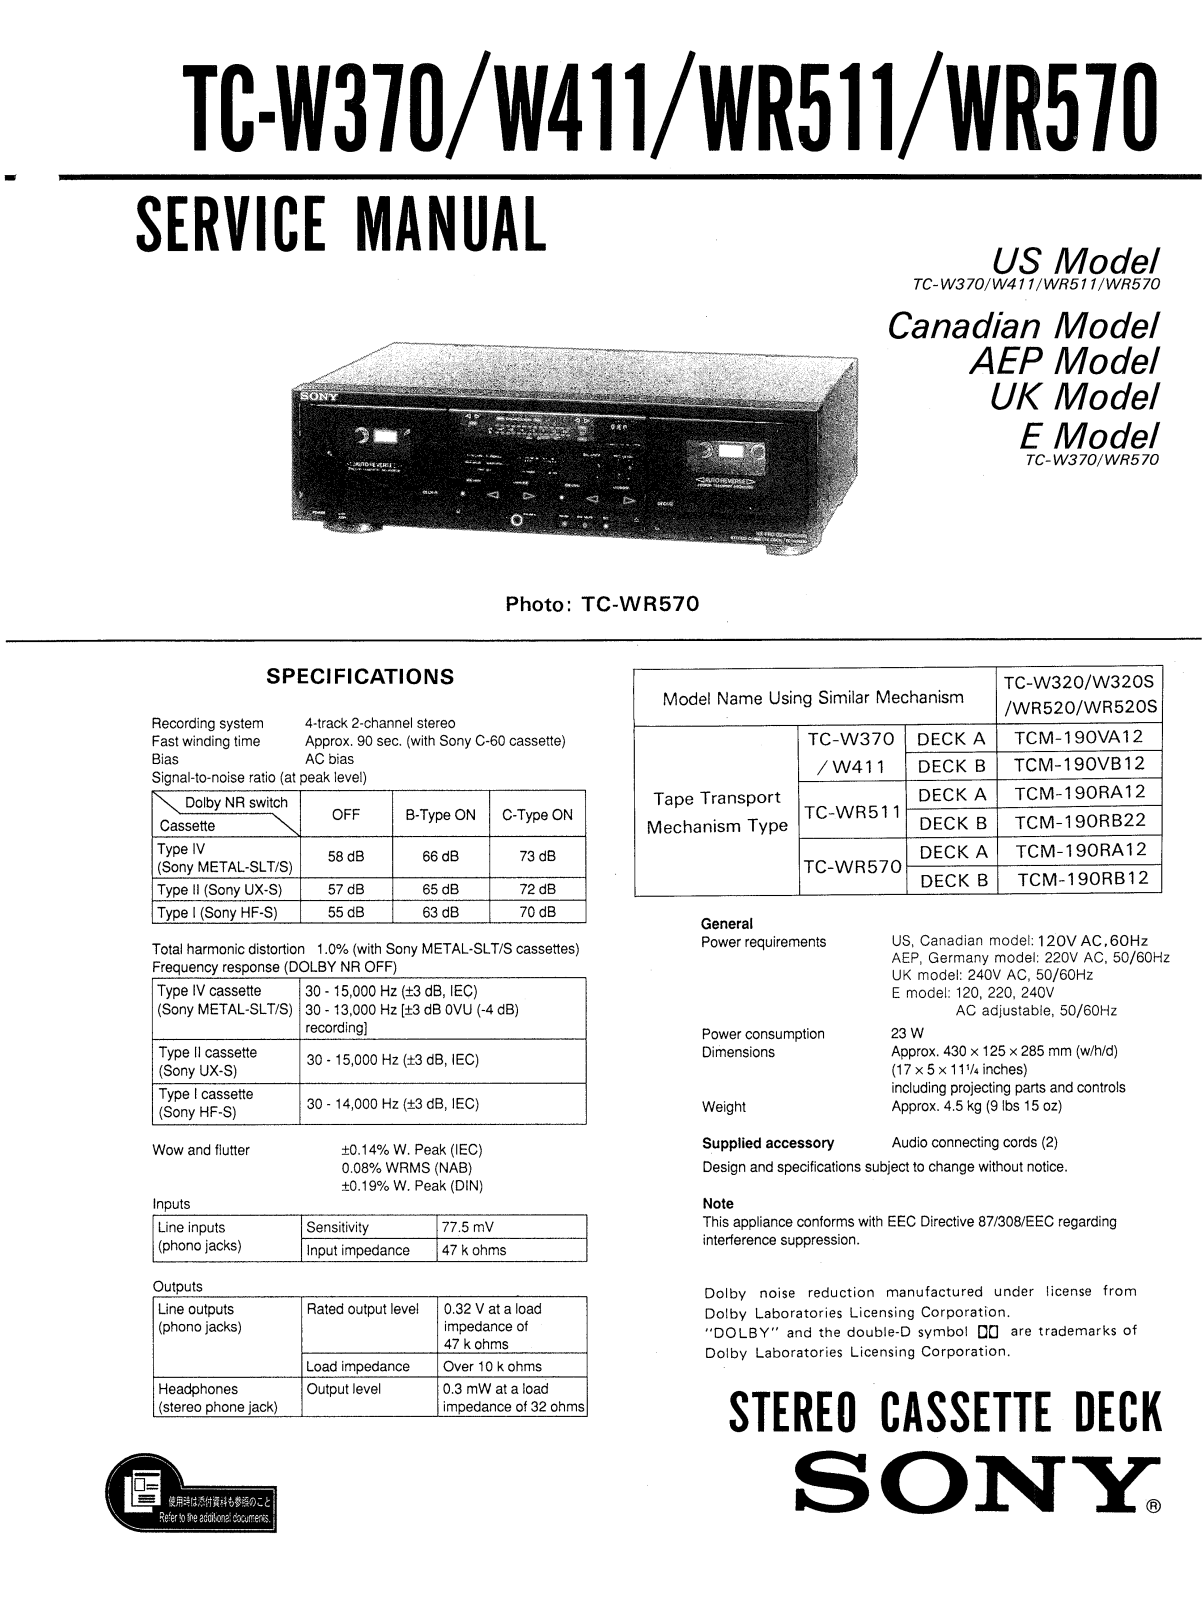 Sony TCW-411 Service manual